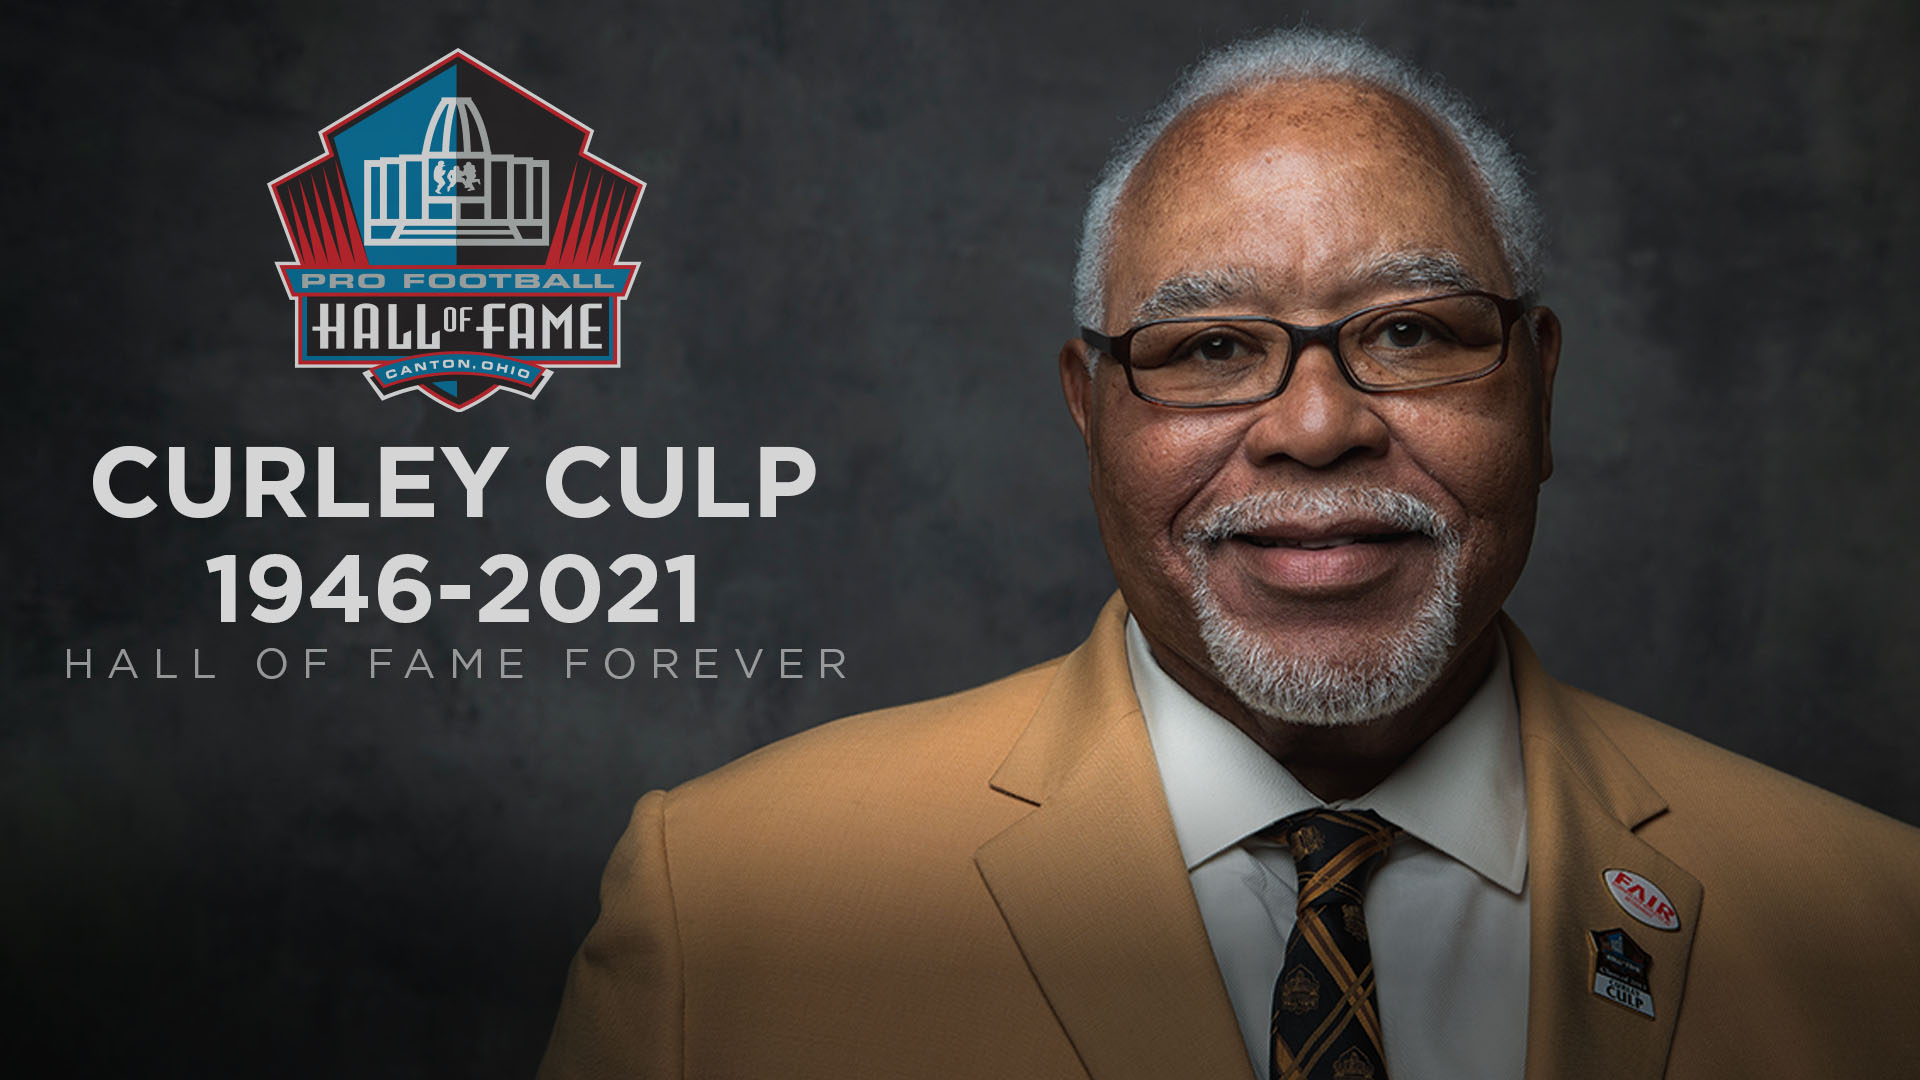 NFL Hall of Famer, defensive tackle legend Curley Culp dies aged 75